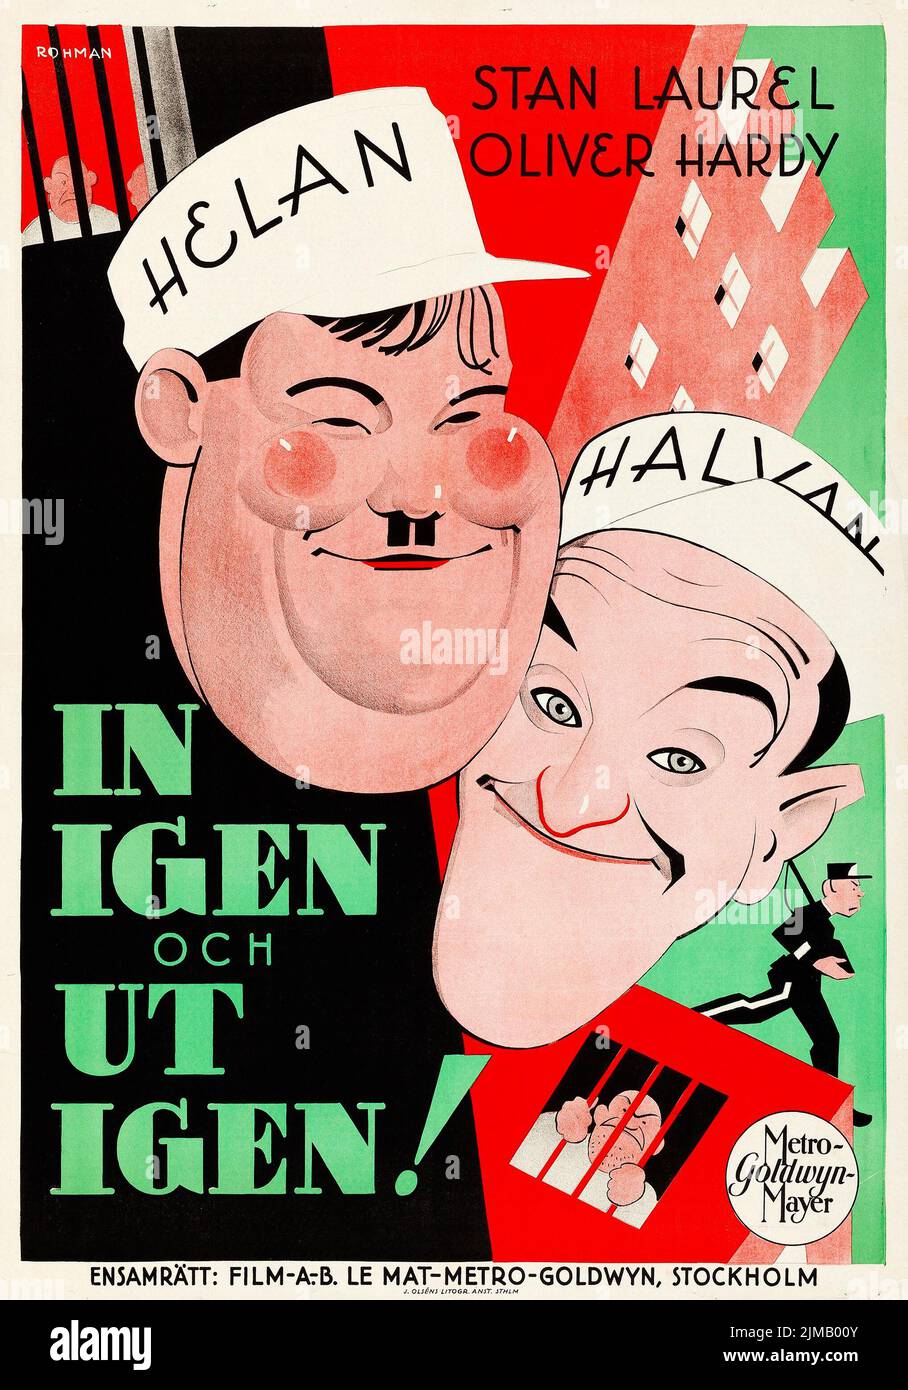 In igen och ut igen - Pardon Us (MGM, 1931). Swedish - Eric Rohman Artwork - Helan och halvan. Stan Laurel, Oliver Hardy Stock Photo